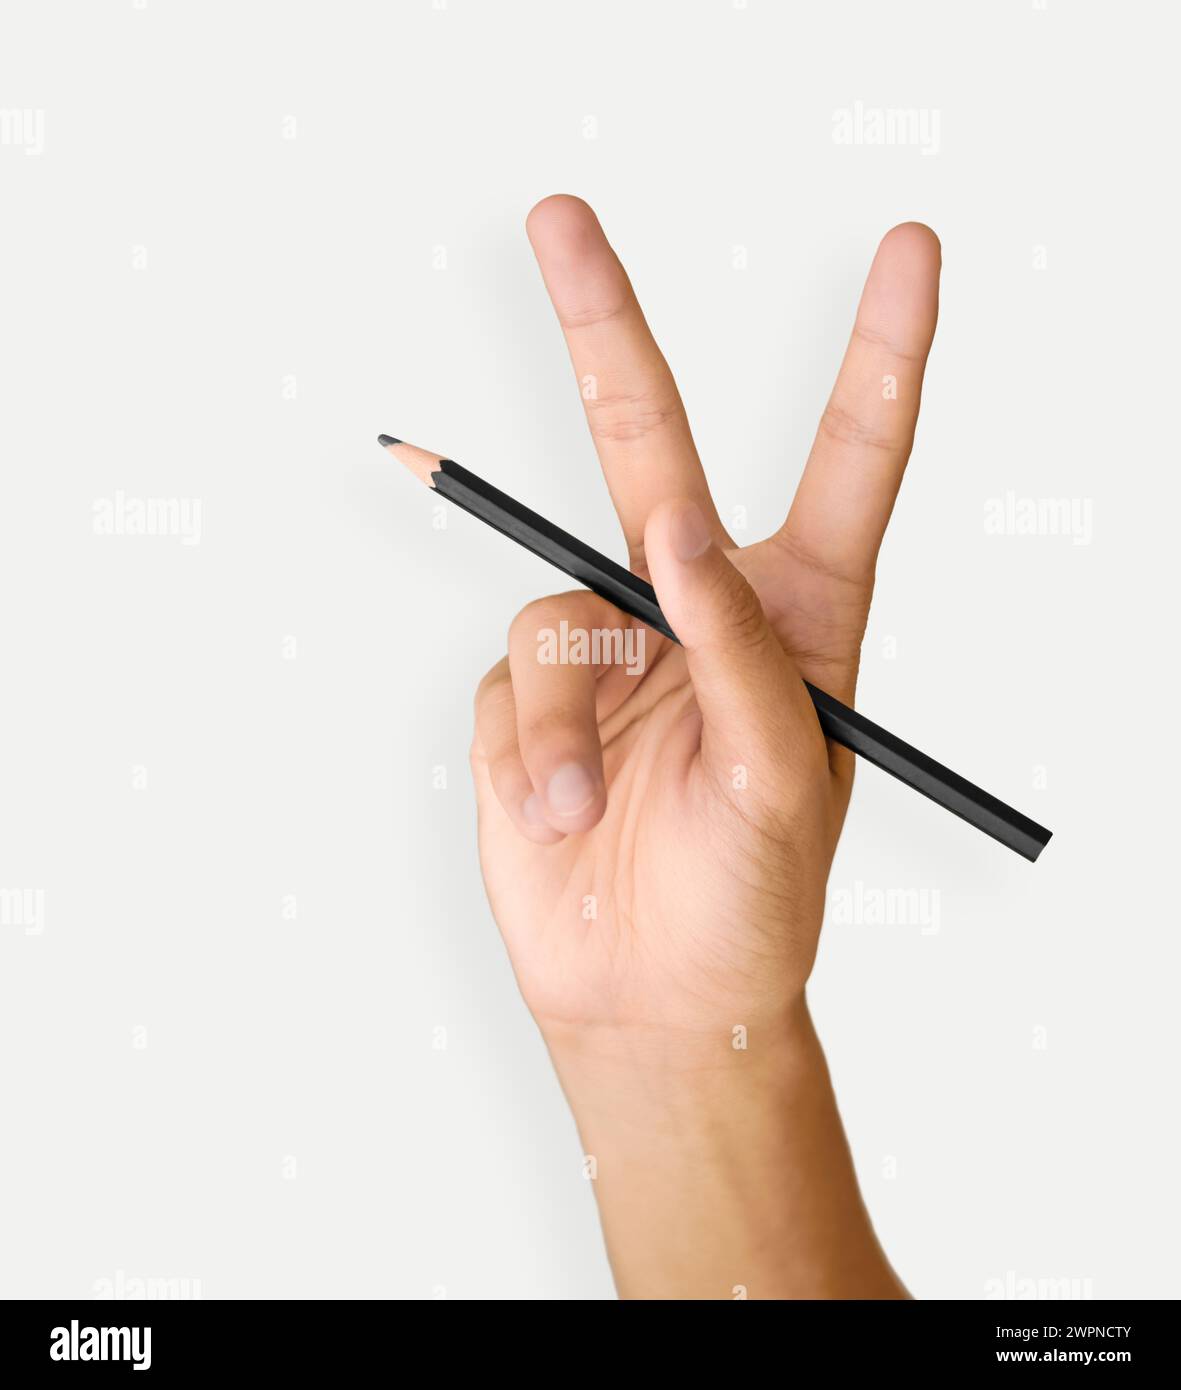 La mano di un uomo tiene una matita nera su sfondo bianco, tagliata e isolata Foto Stock